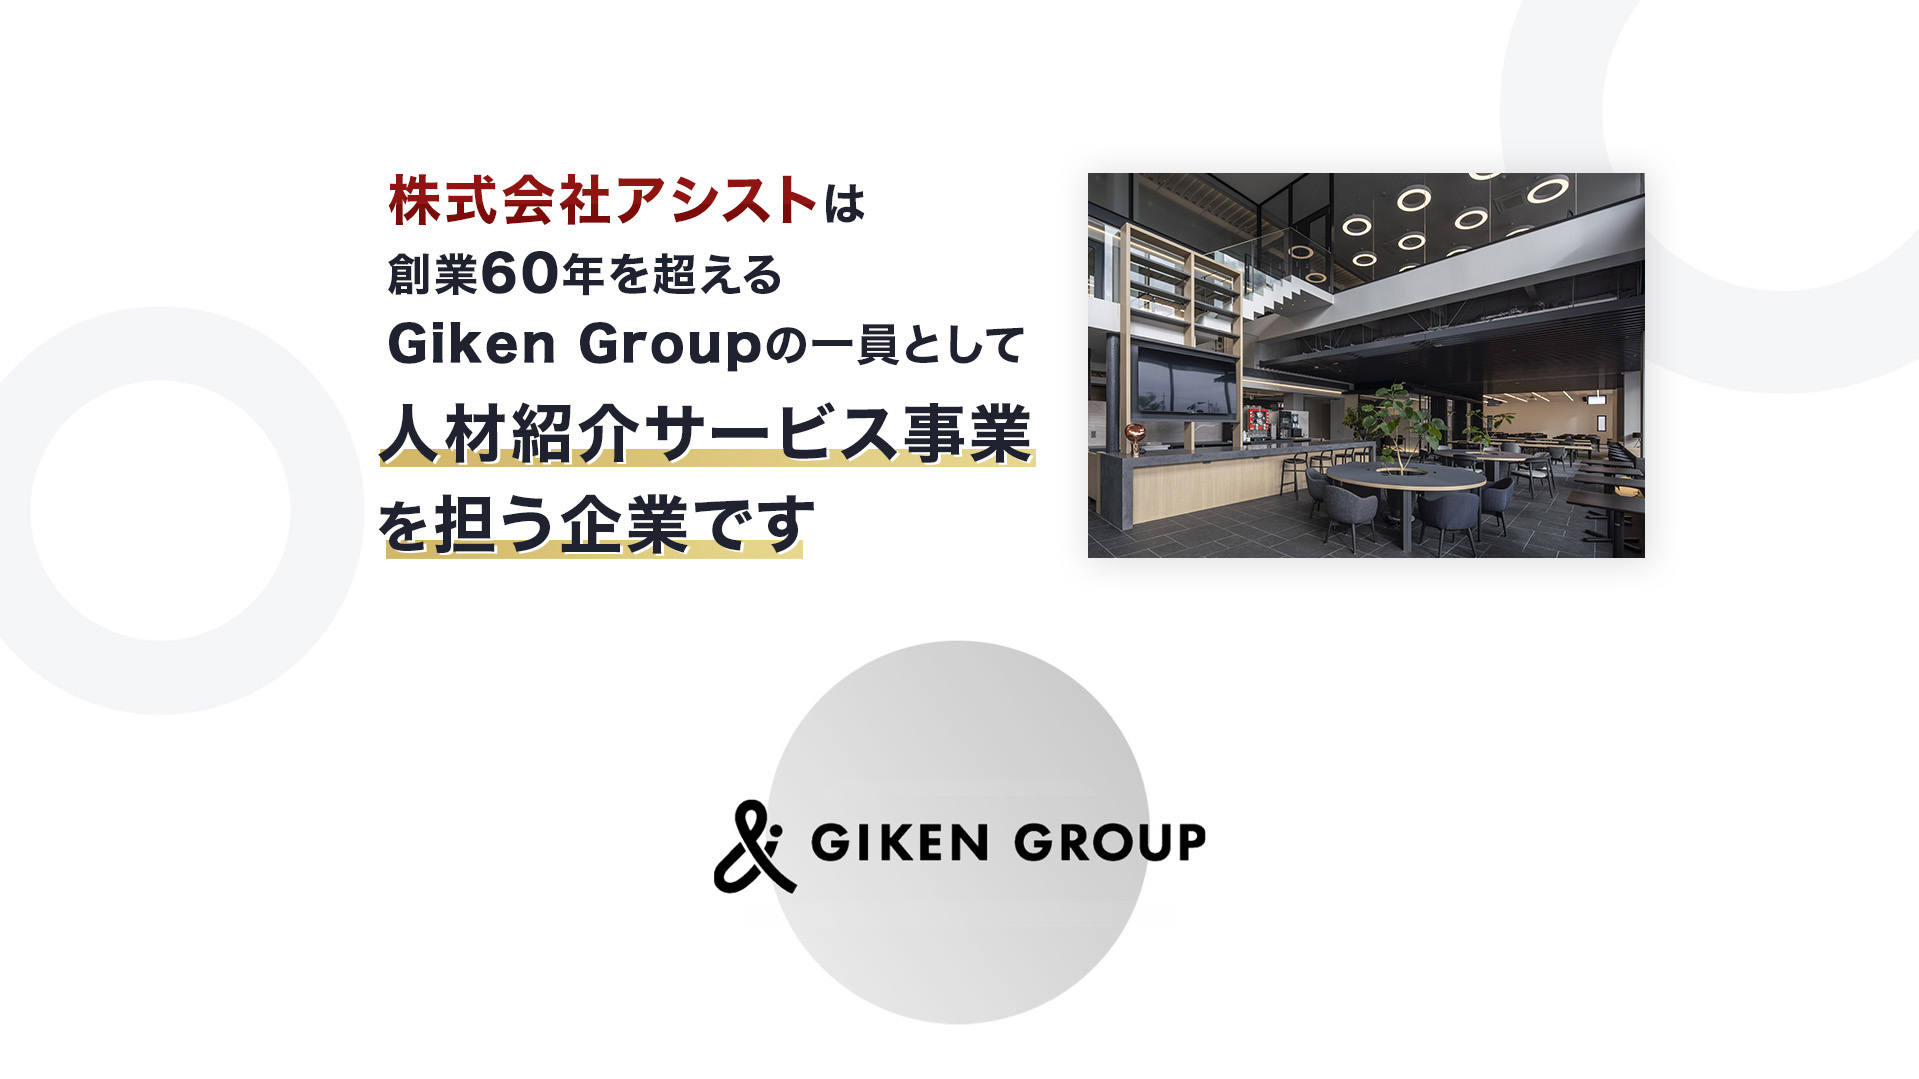 株式会社アシストはGiken Groupの一員として人材紹介サービス事業を担う企業です